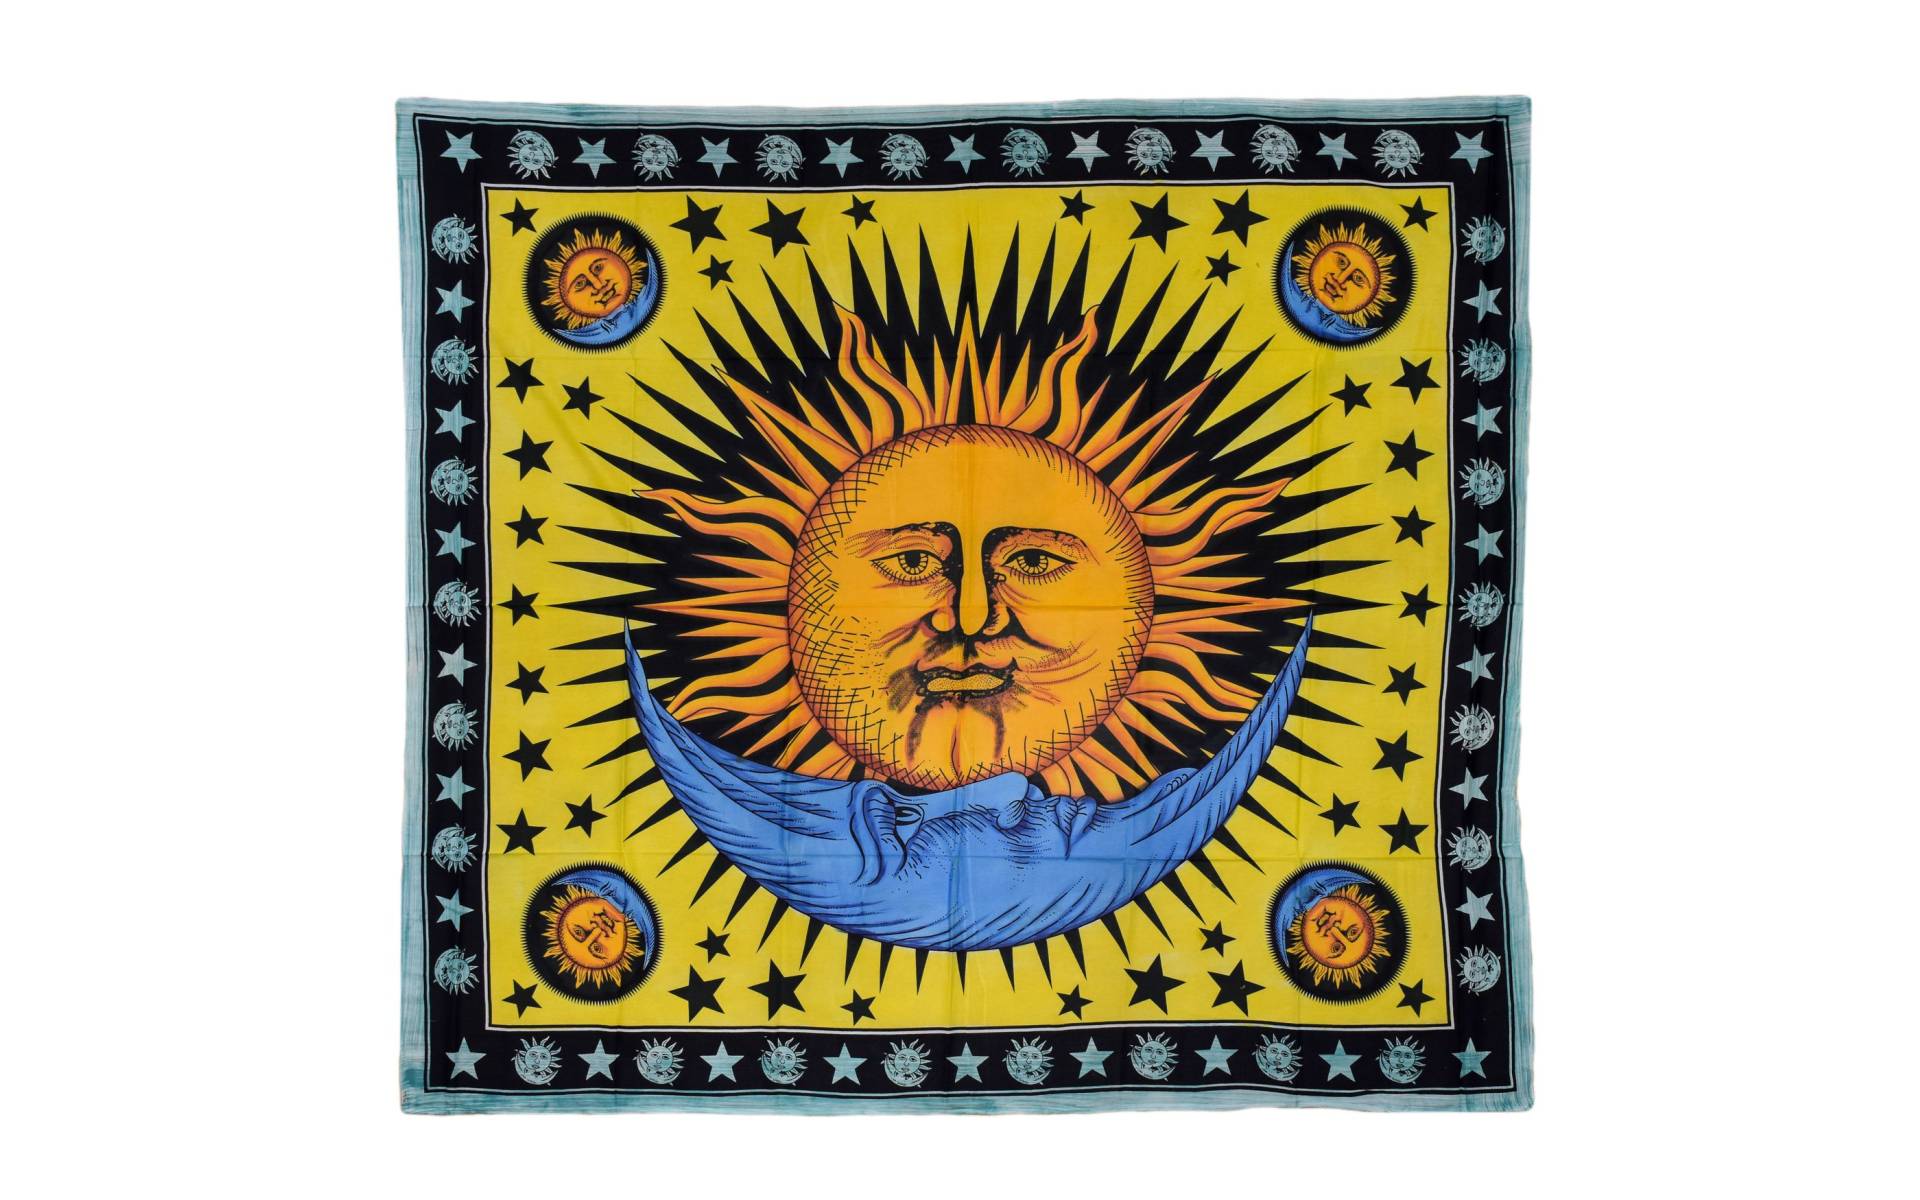 Prikrývka na posteľ, potlač slnka a mesiac, žlto-modrý 210x230cm